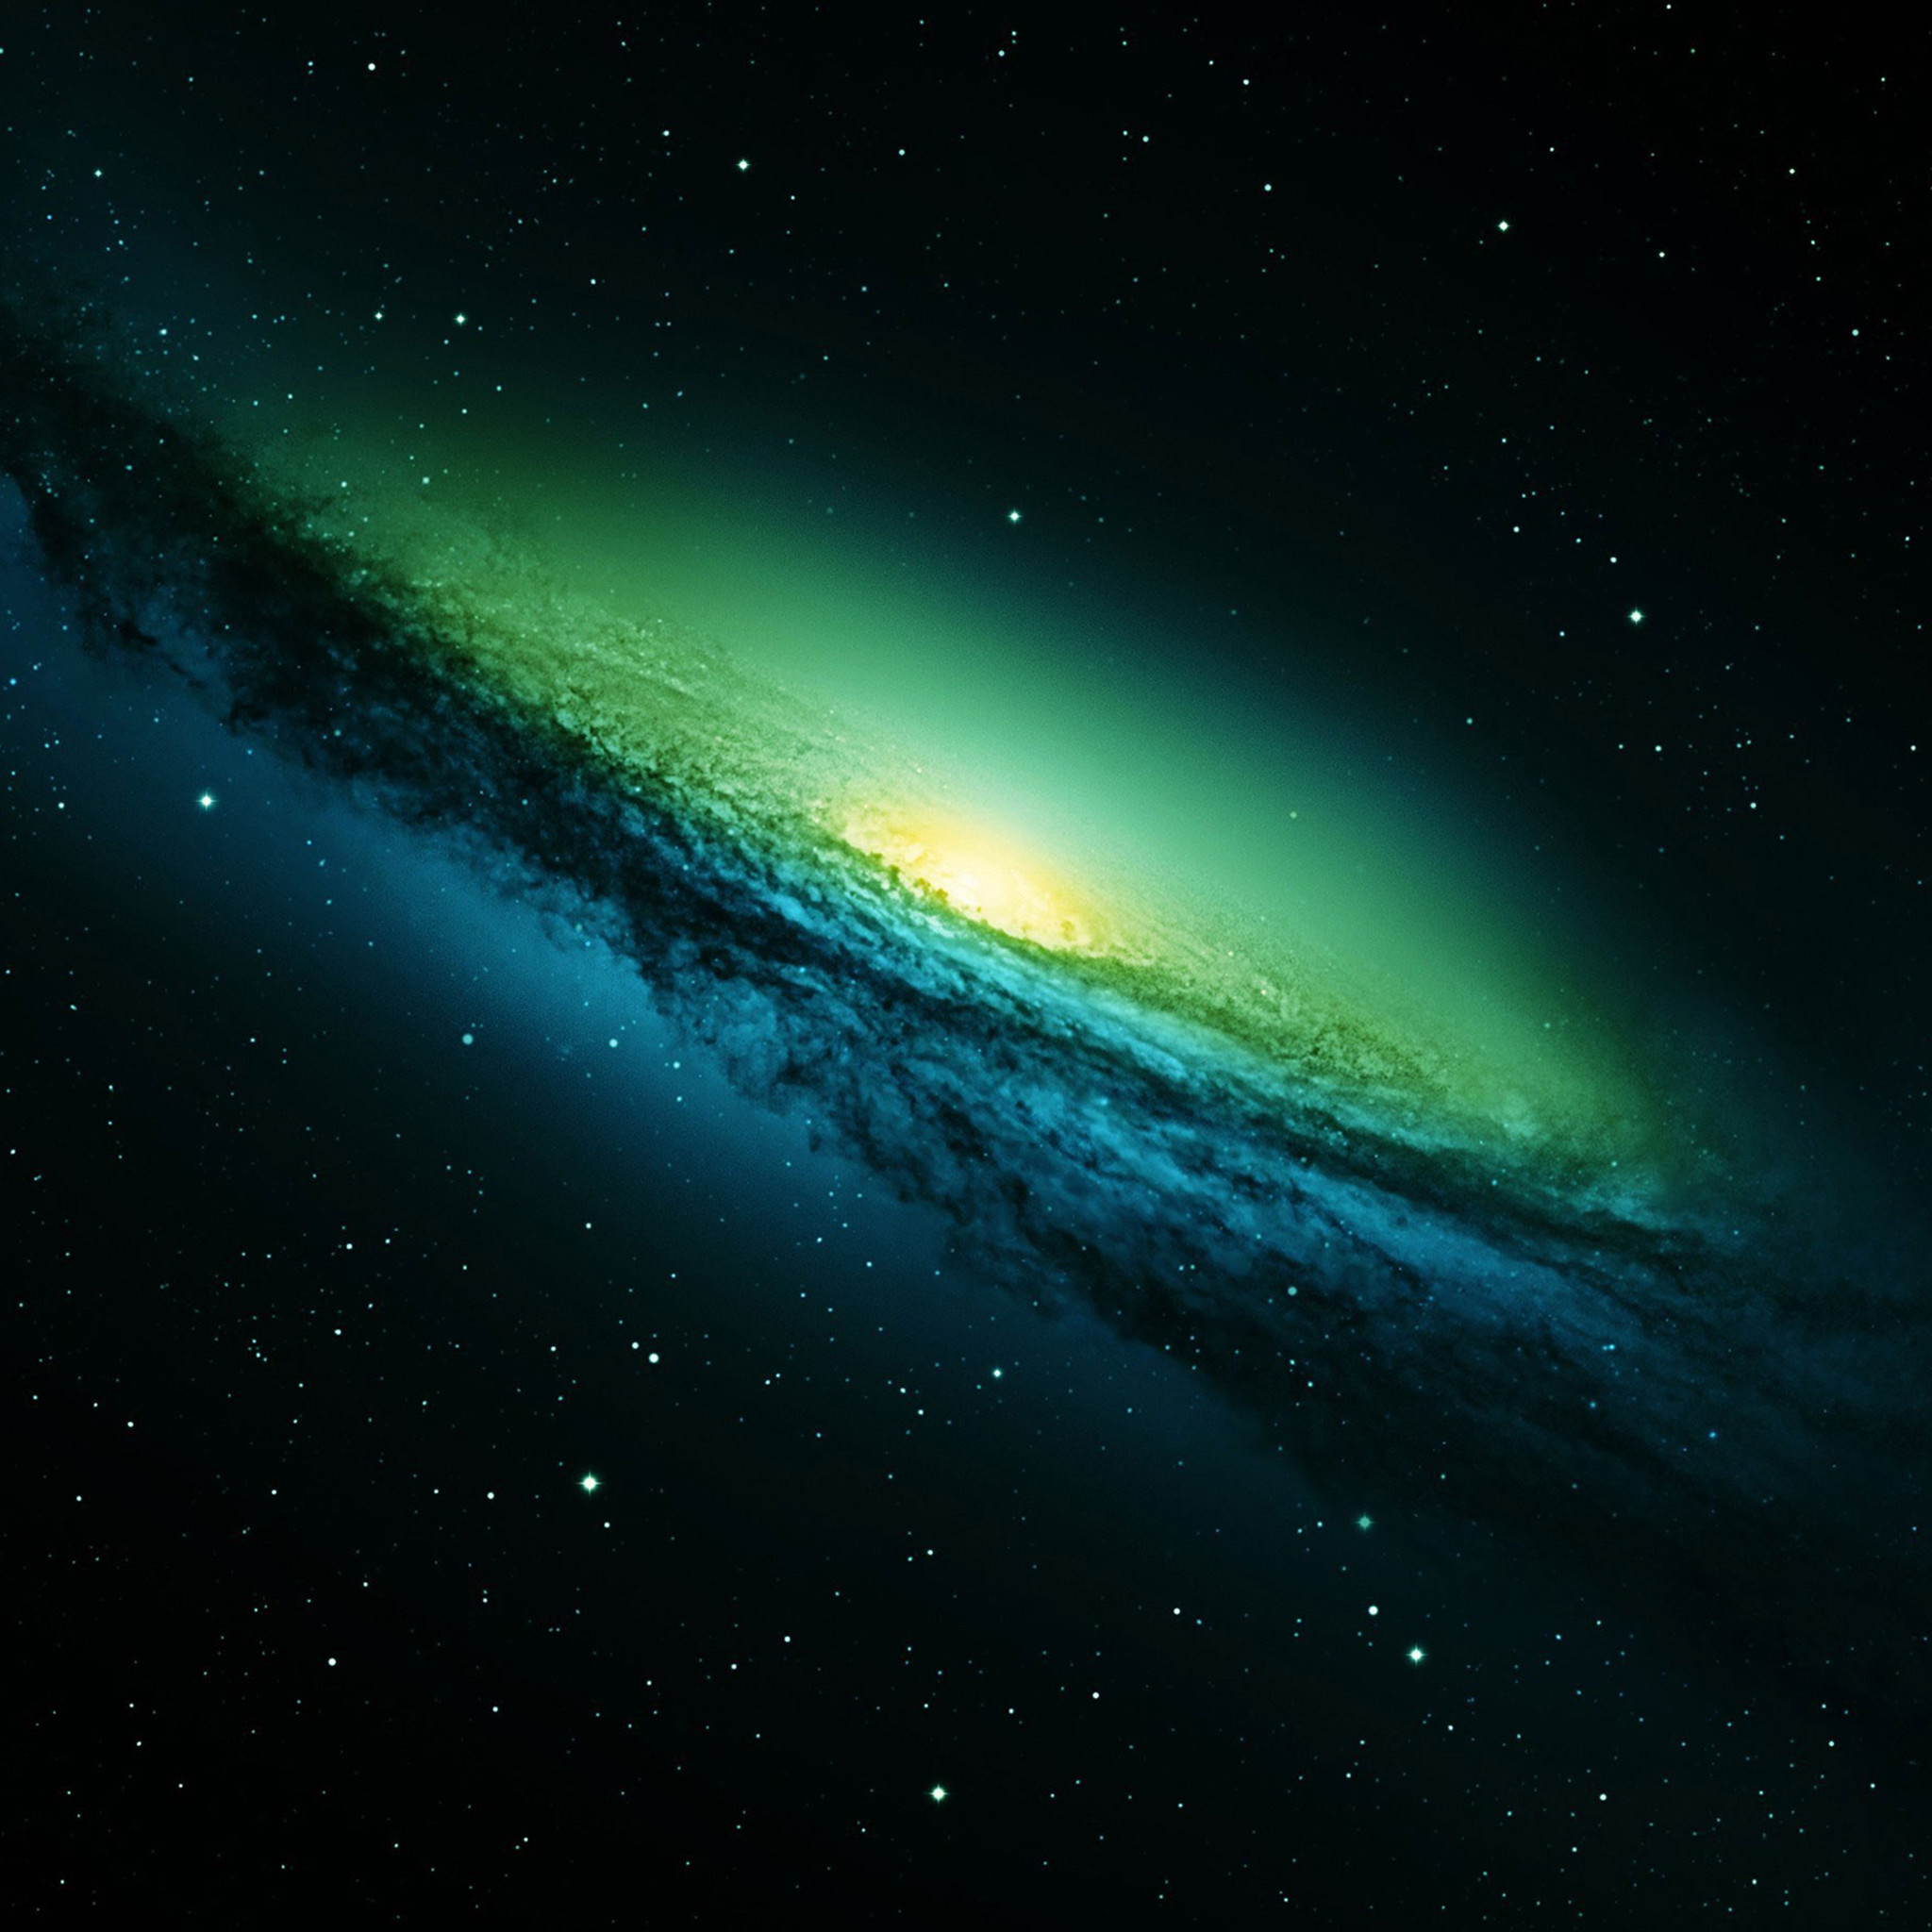 samsung galaxy grand prime plus tapete,himmel,atmosphäre,grün,aurora,weltraum